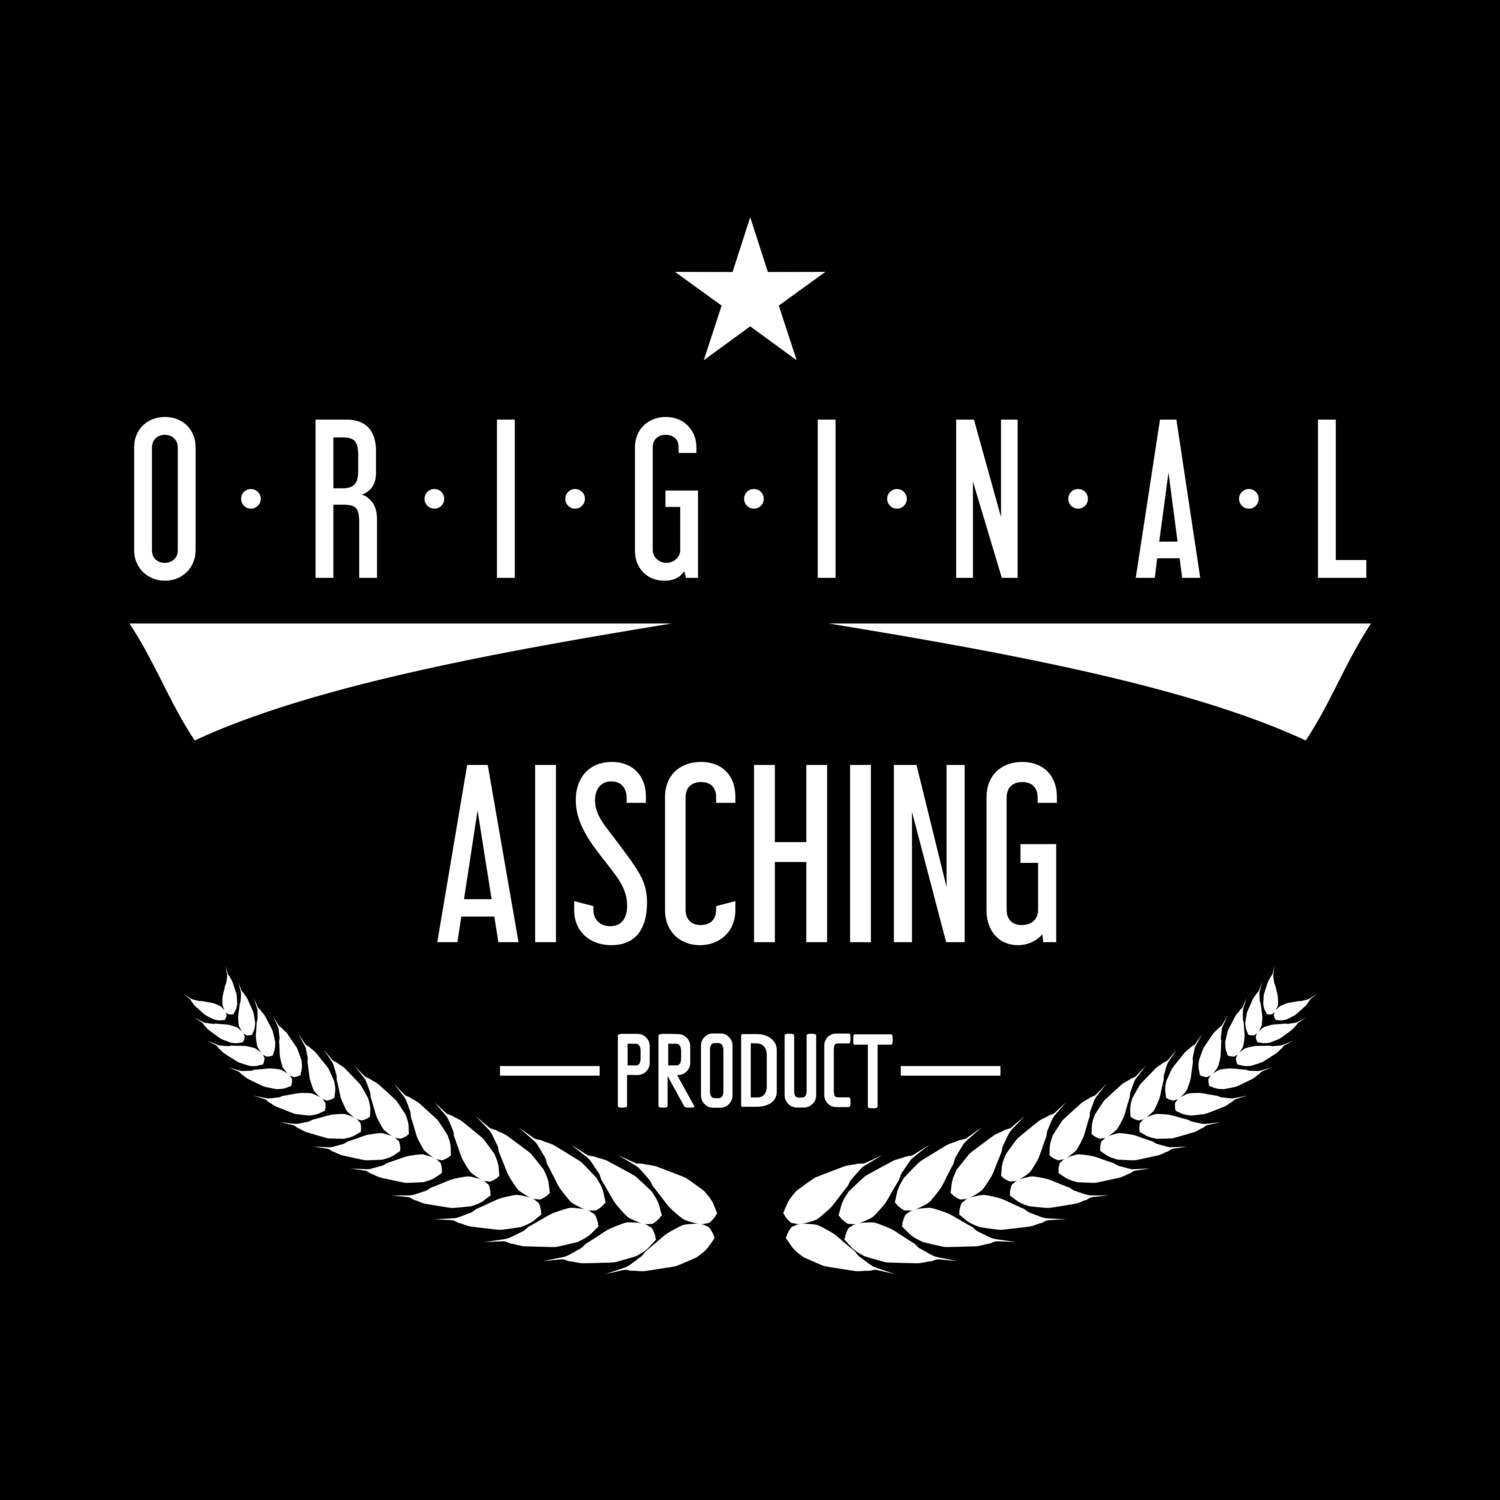 Aisching T-Shirt »Original Product«